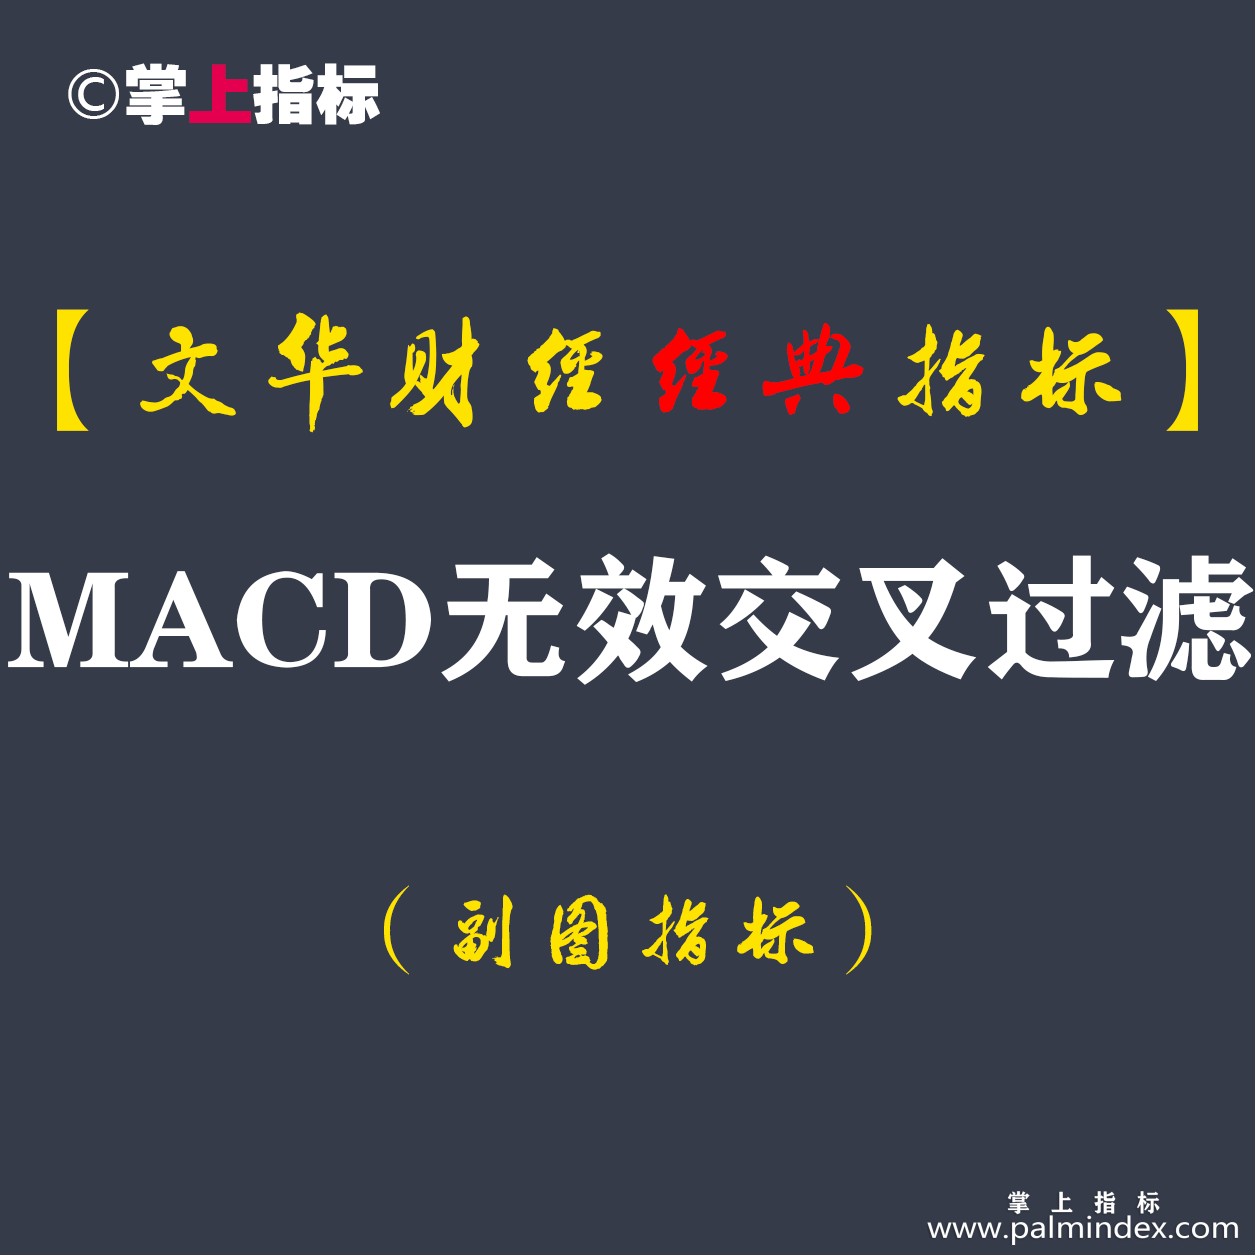 【文华财经指标】MACD无效交叉过滤-过滤MACD无效交叉指标公式(W041)